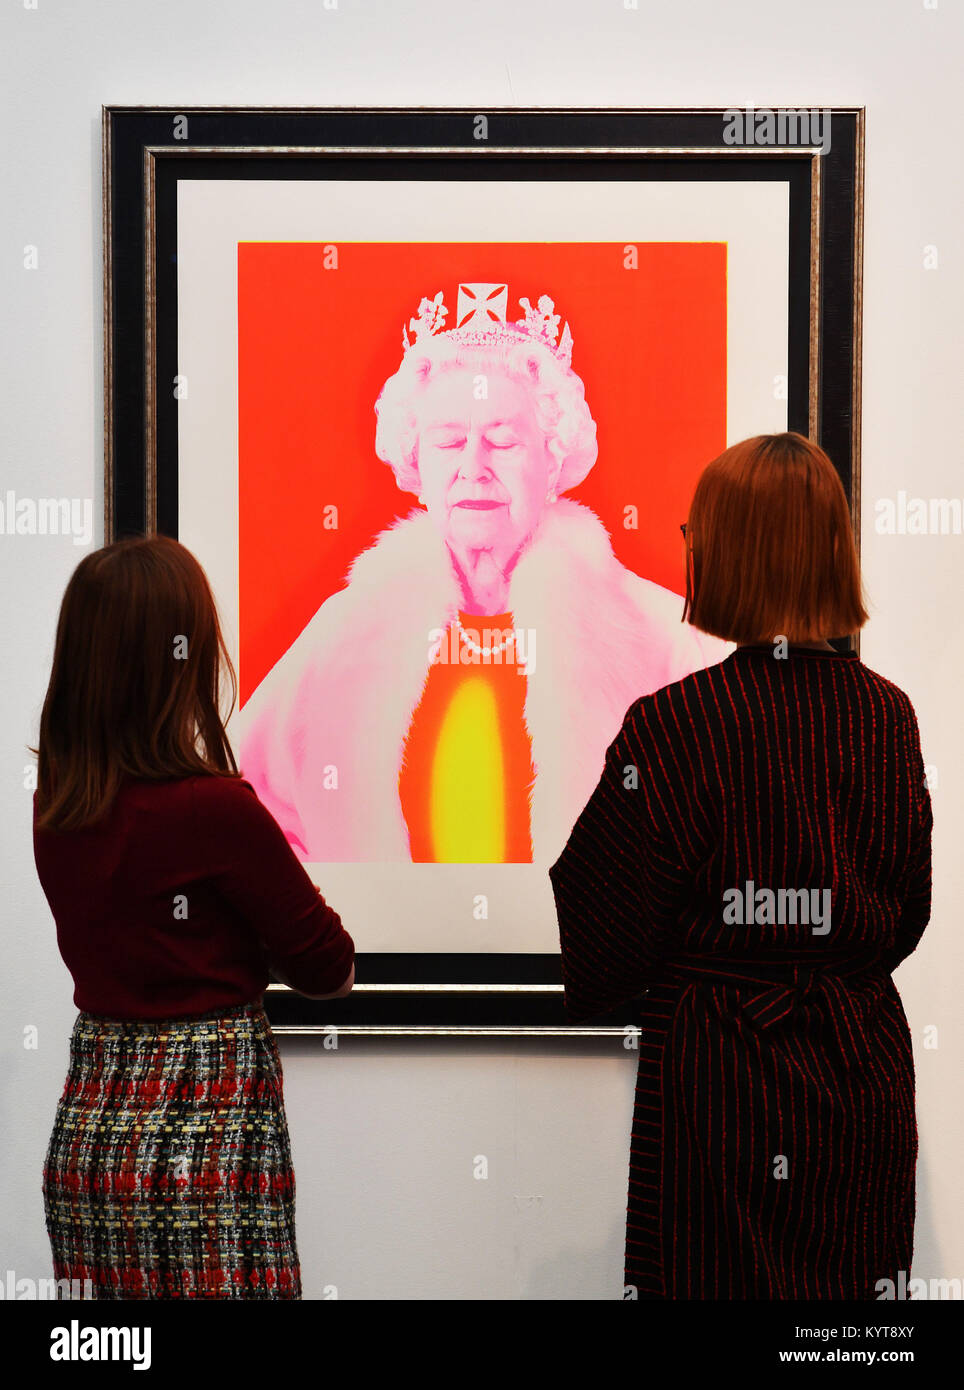 Due donne ammirare una pop-art ritratto della regina, in mostra a premere anteprima per il London Art Fair a Islington, precedendo la sua apertura al pubblico di domani. Foto Stock